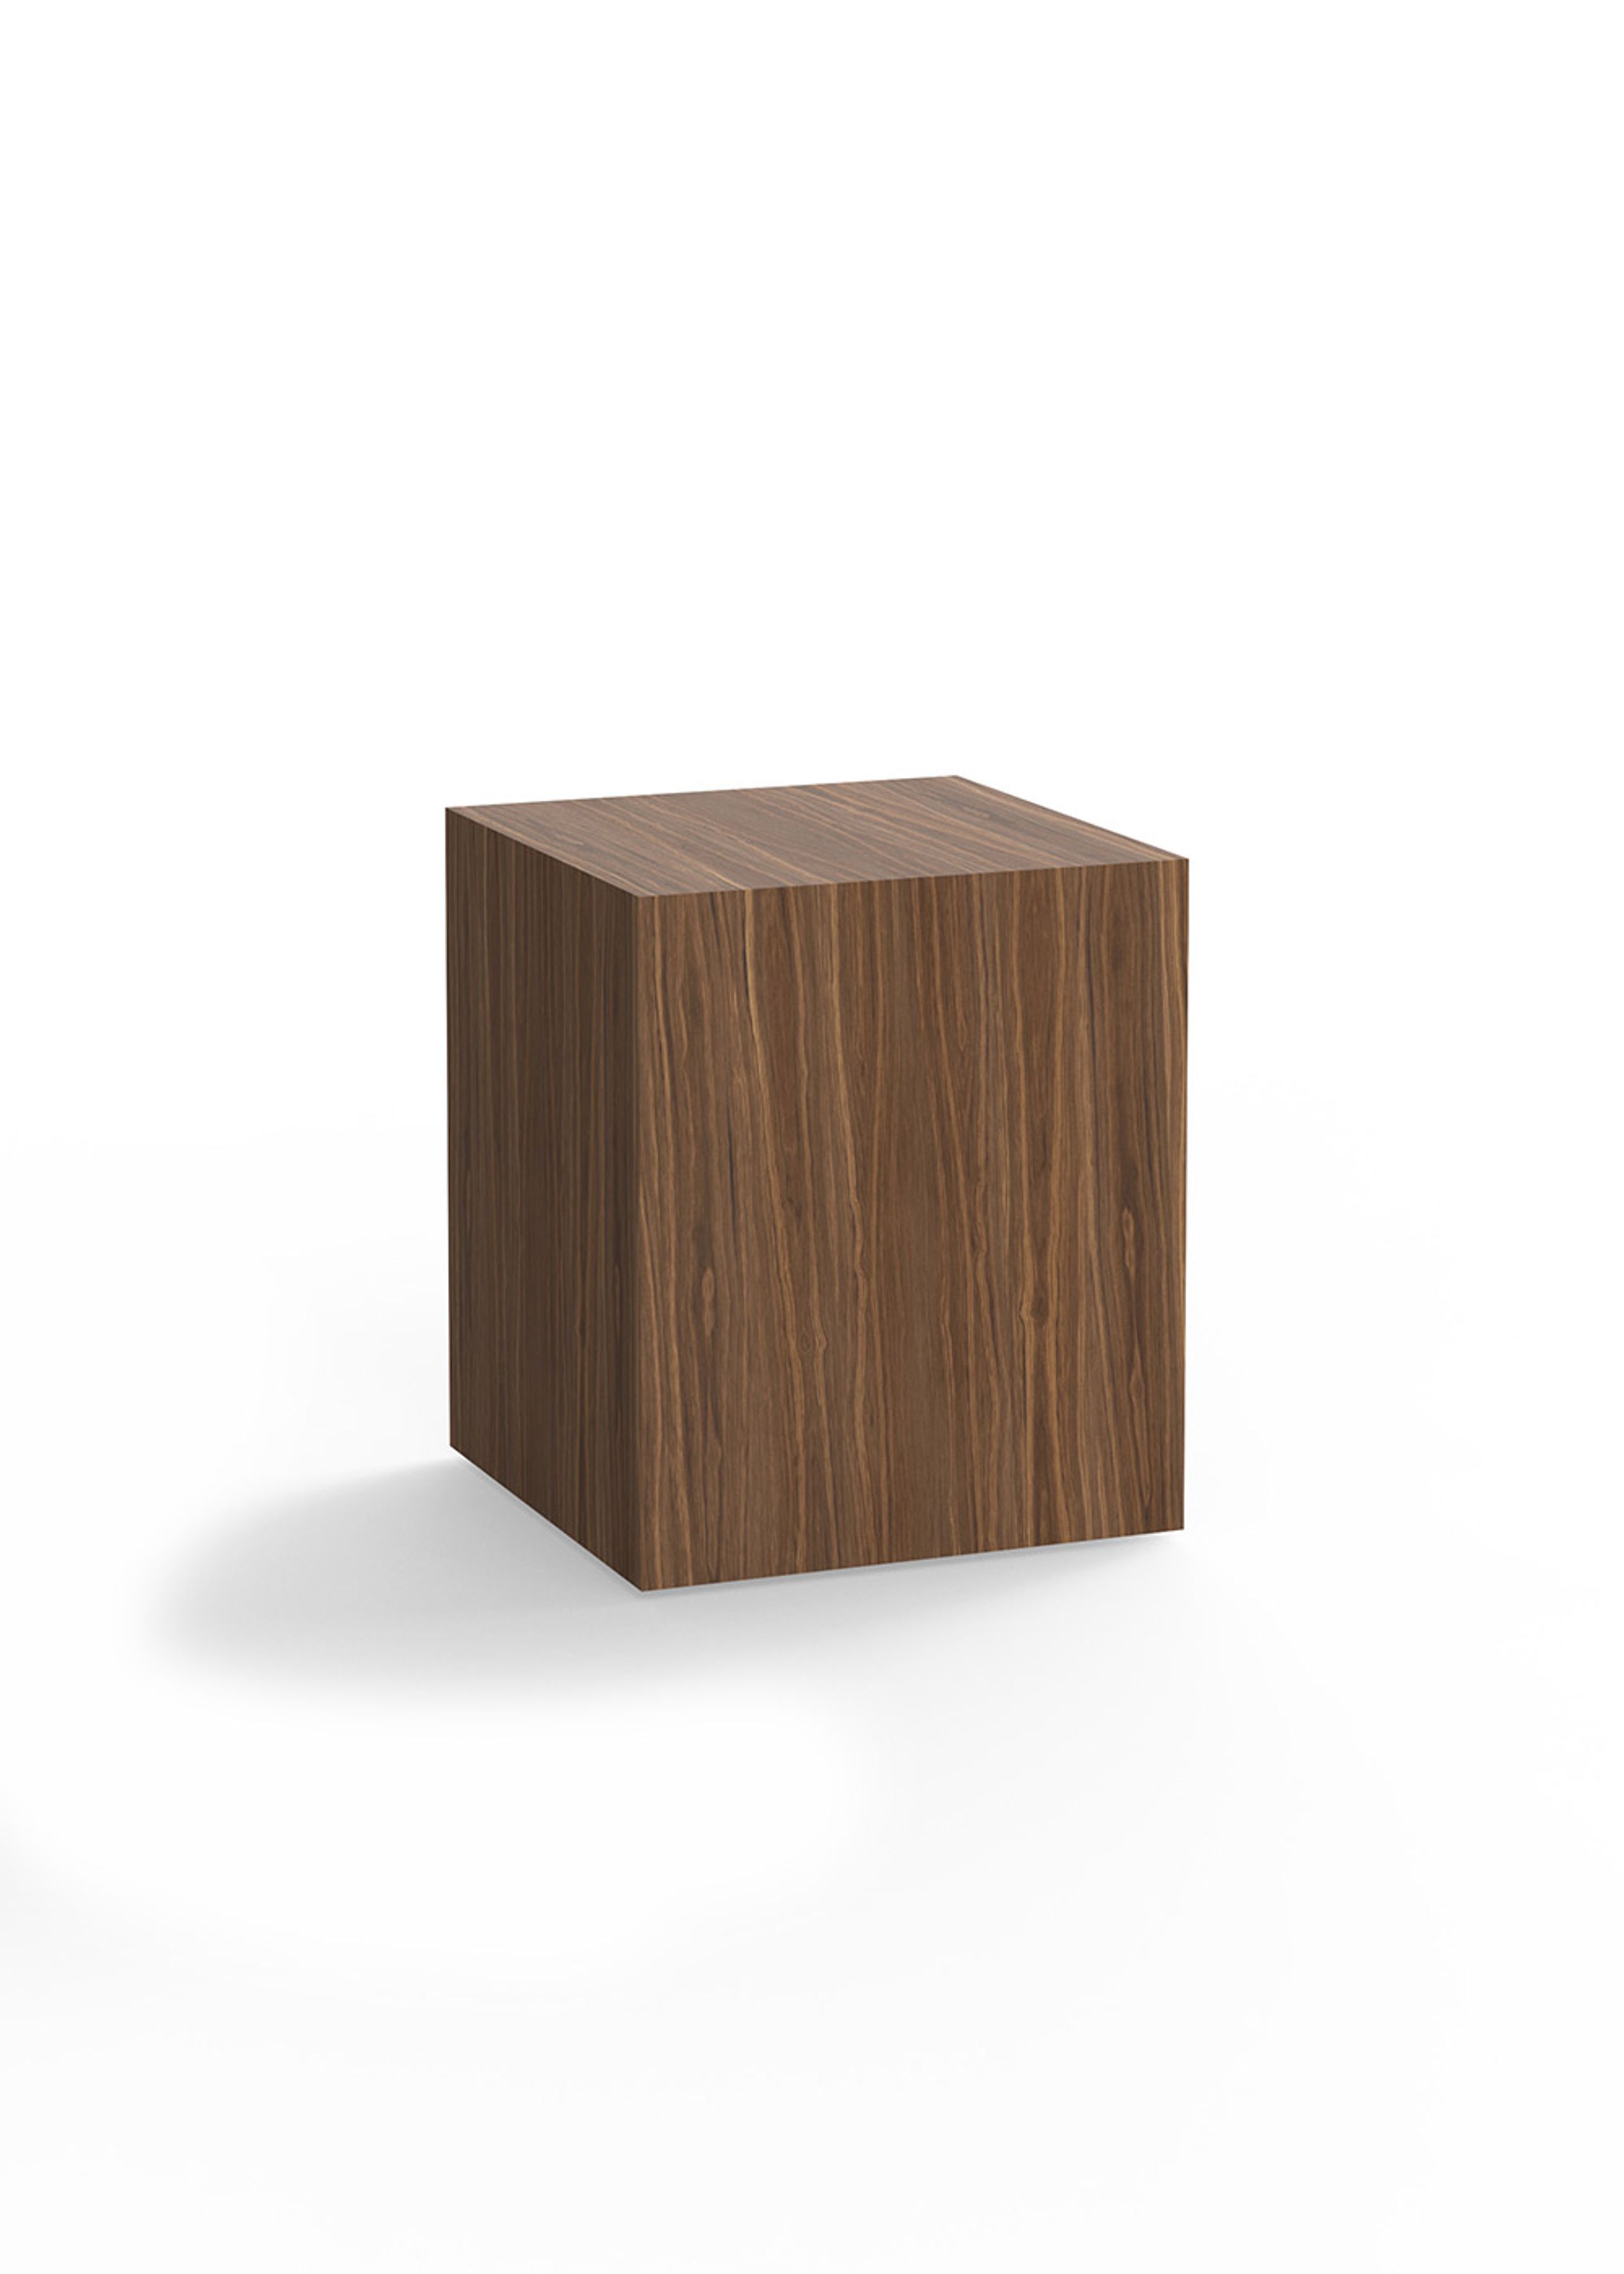 New Works - Beistelltisch - Mass Side Table  - Walnut